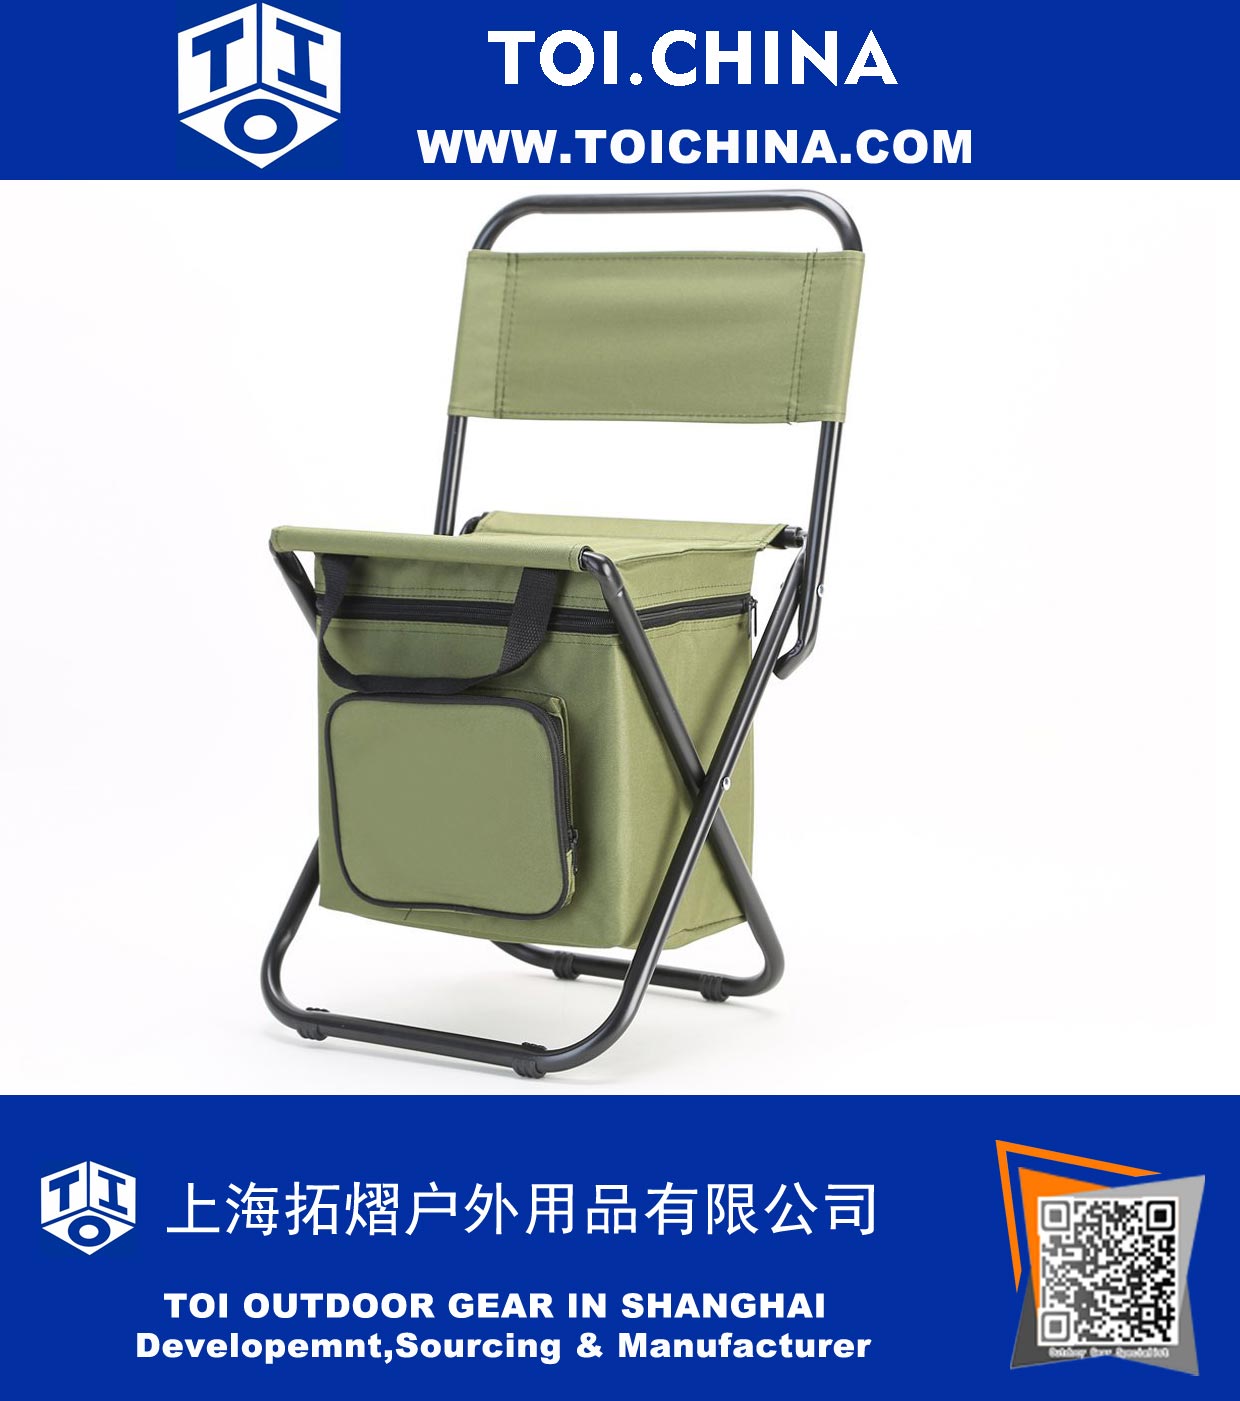 Portable Stuhl mit Kühltasche Multi-Function Outdoor Faltbarer Stuhl Eisbeutel für Angeln, Camping und Reisen